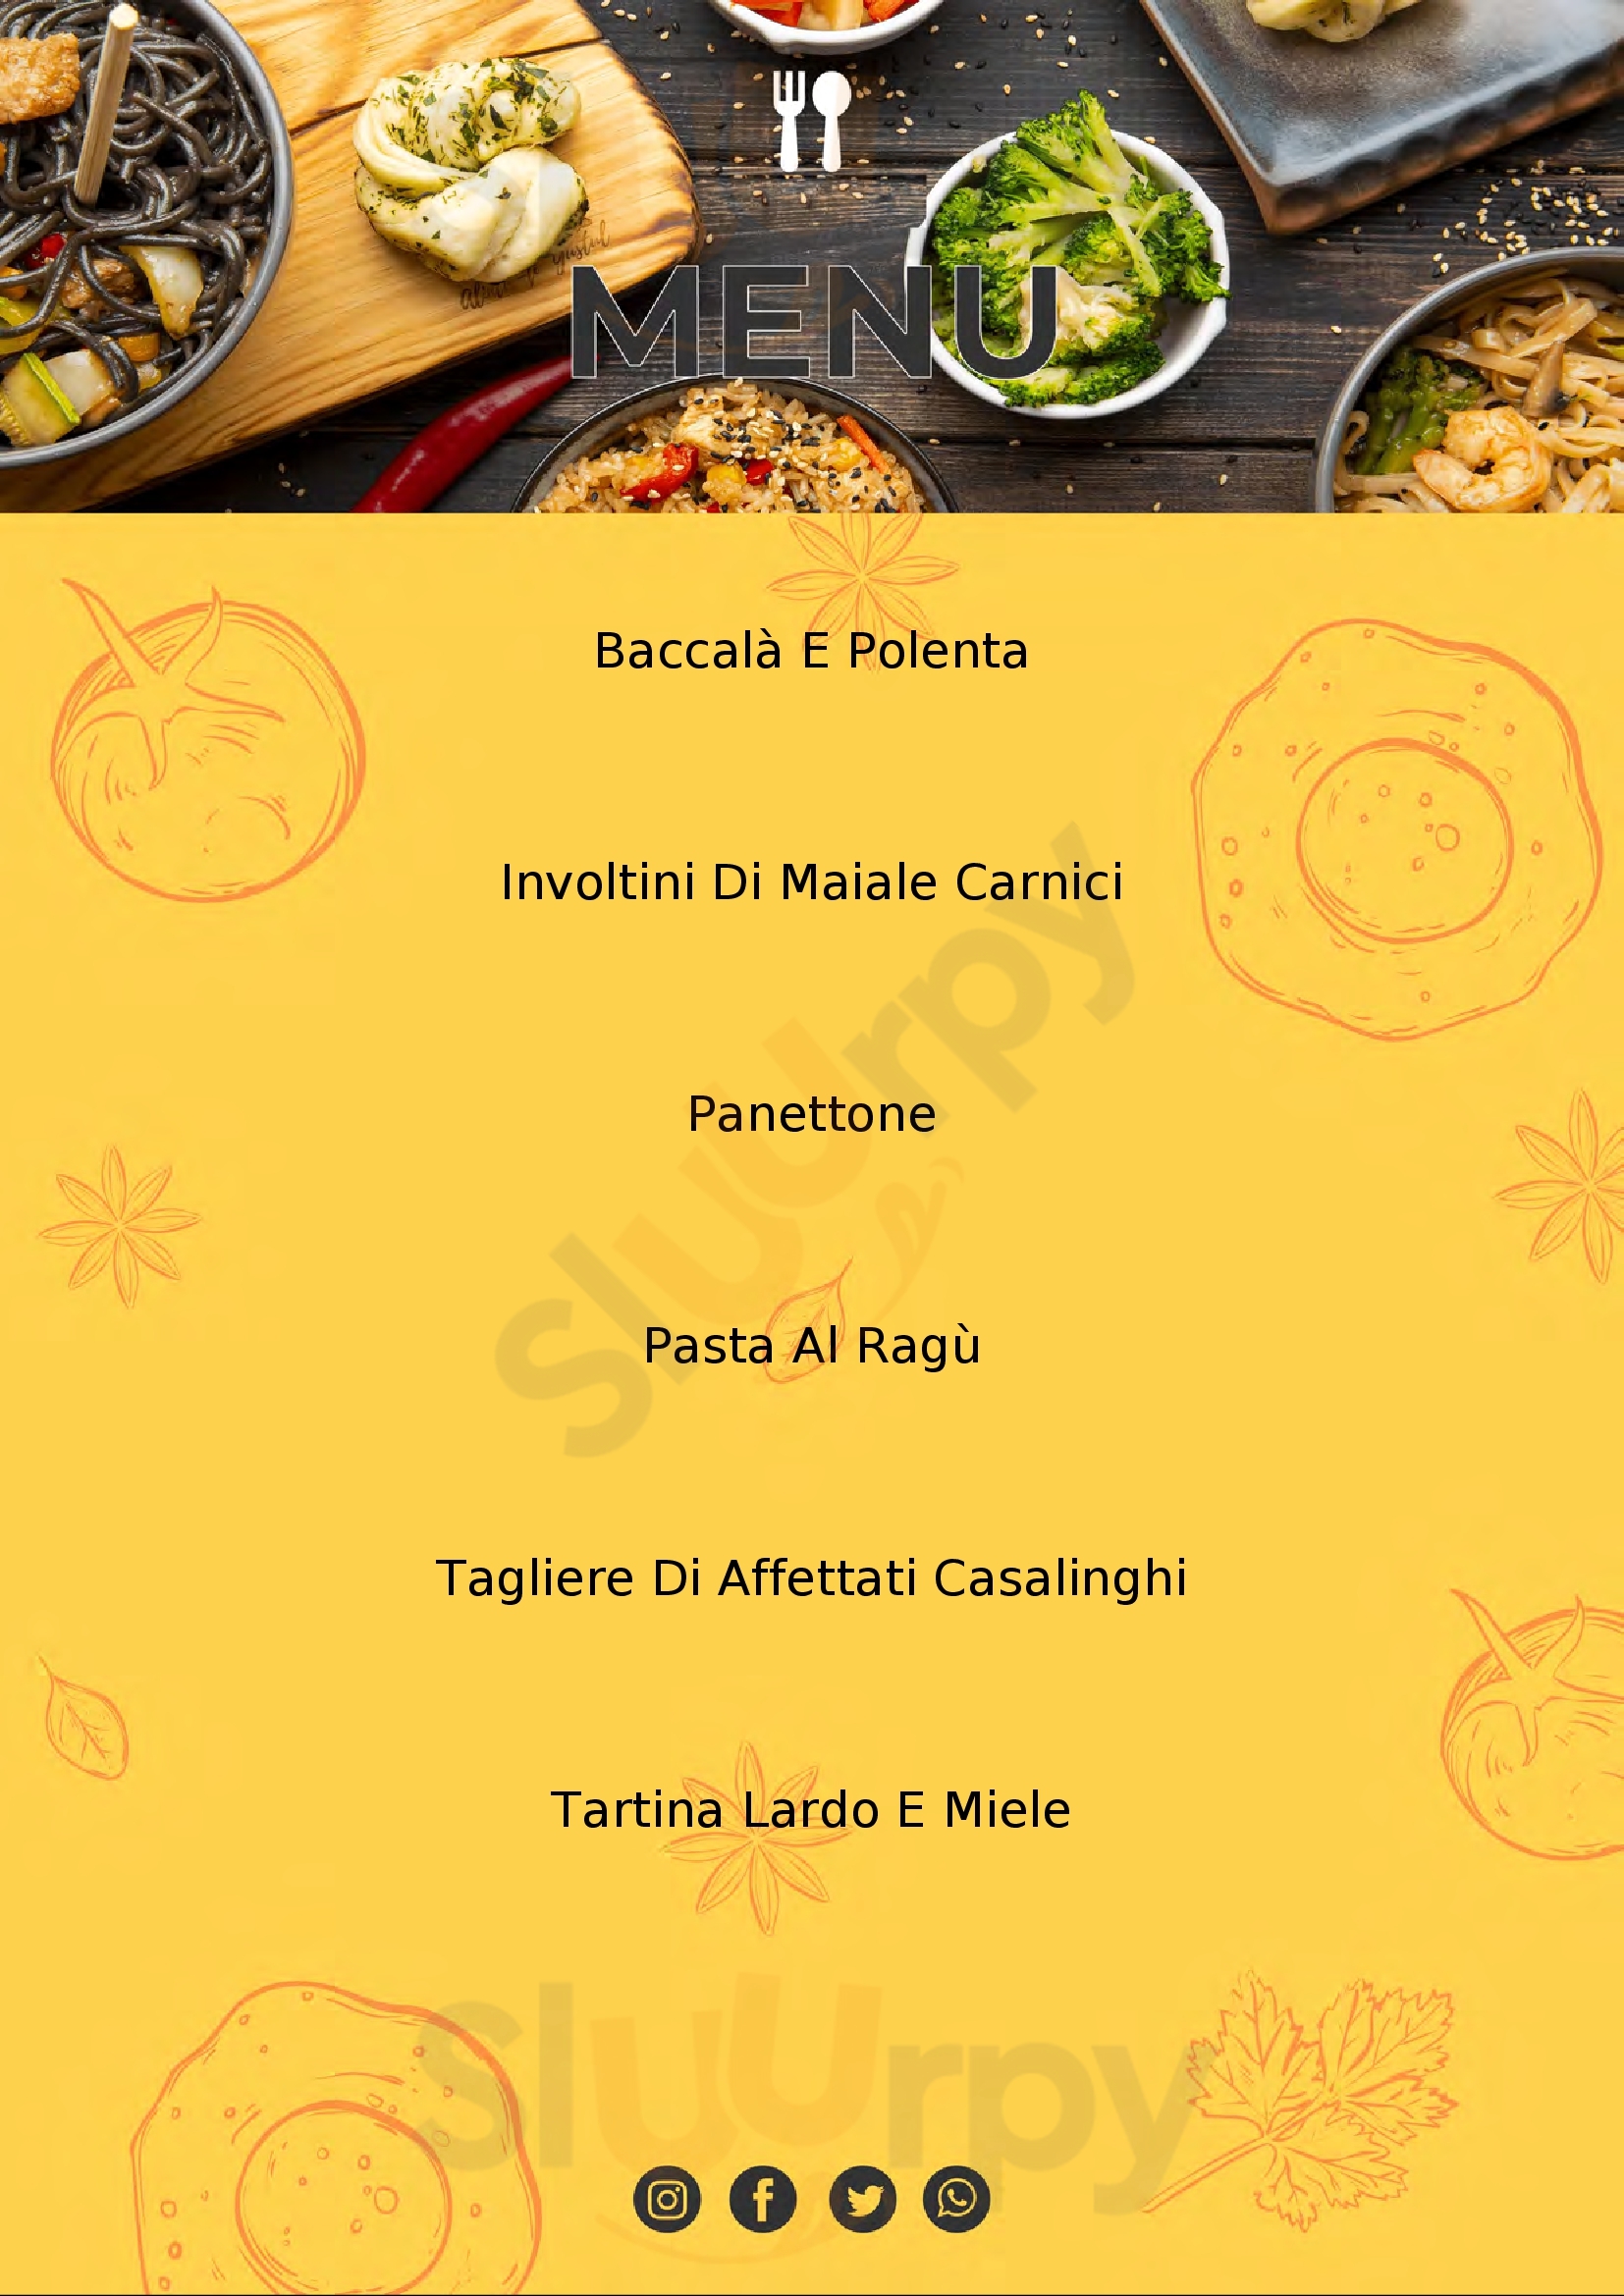 Al BON STA' - Osteria con cucina San Vito di Fagagna menù 1 pagina